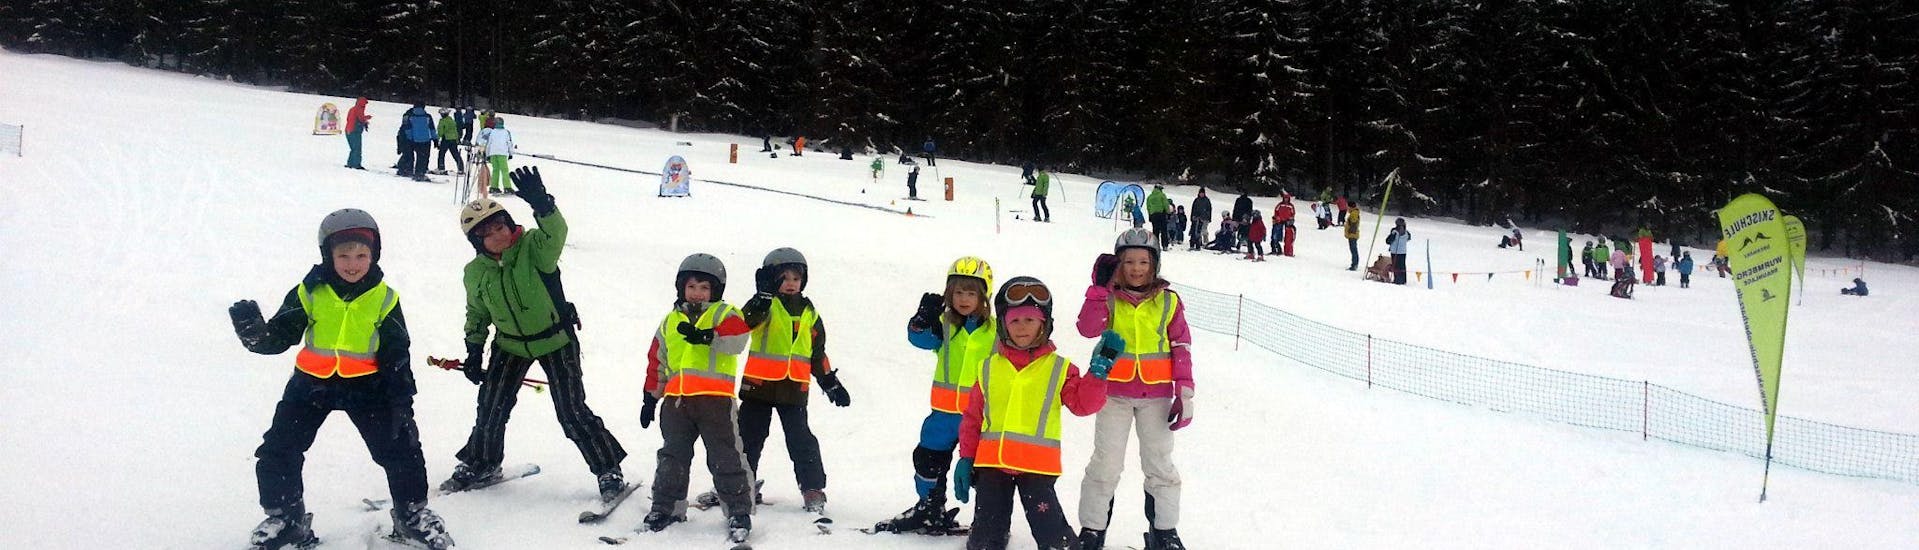 Lezioni di sci per bambini a partire da 12 anni principianti assoluti.